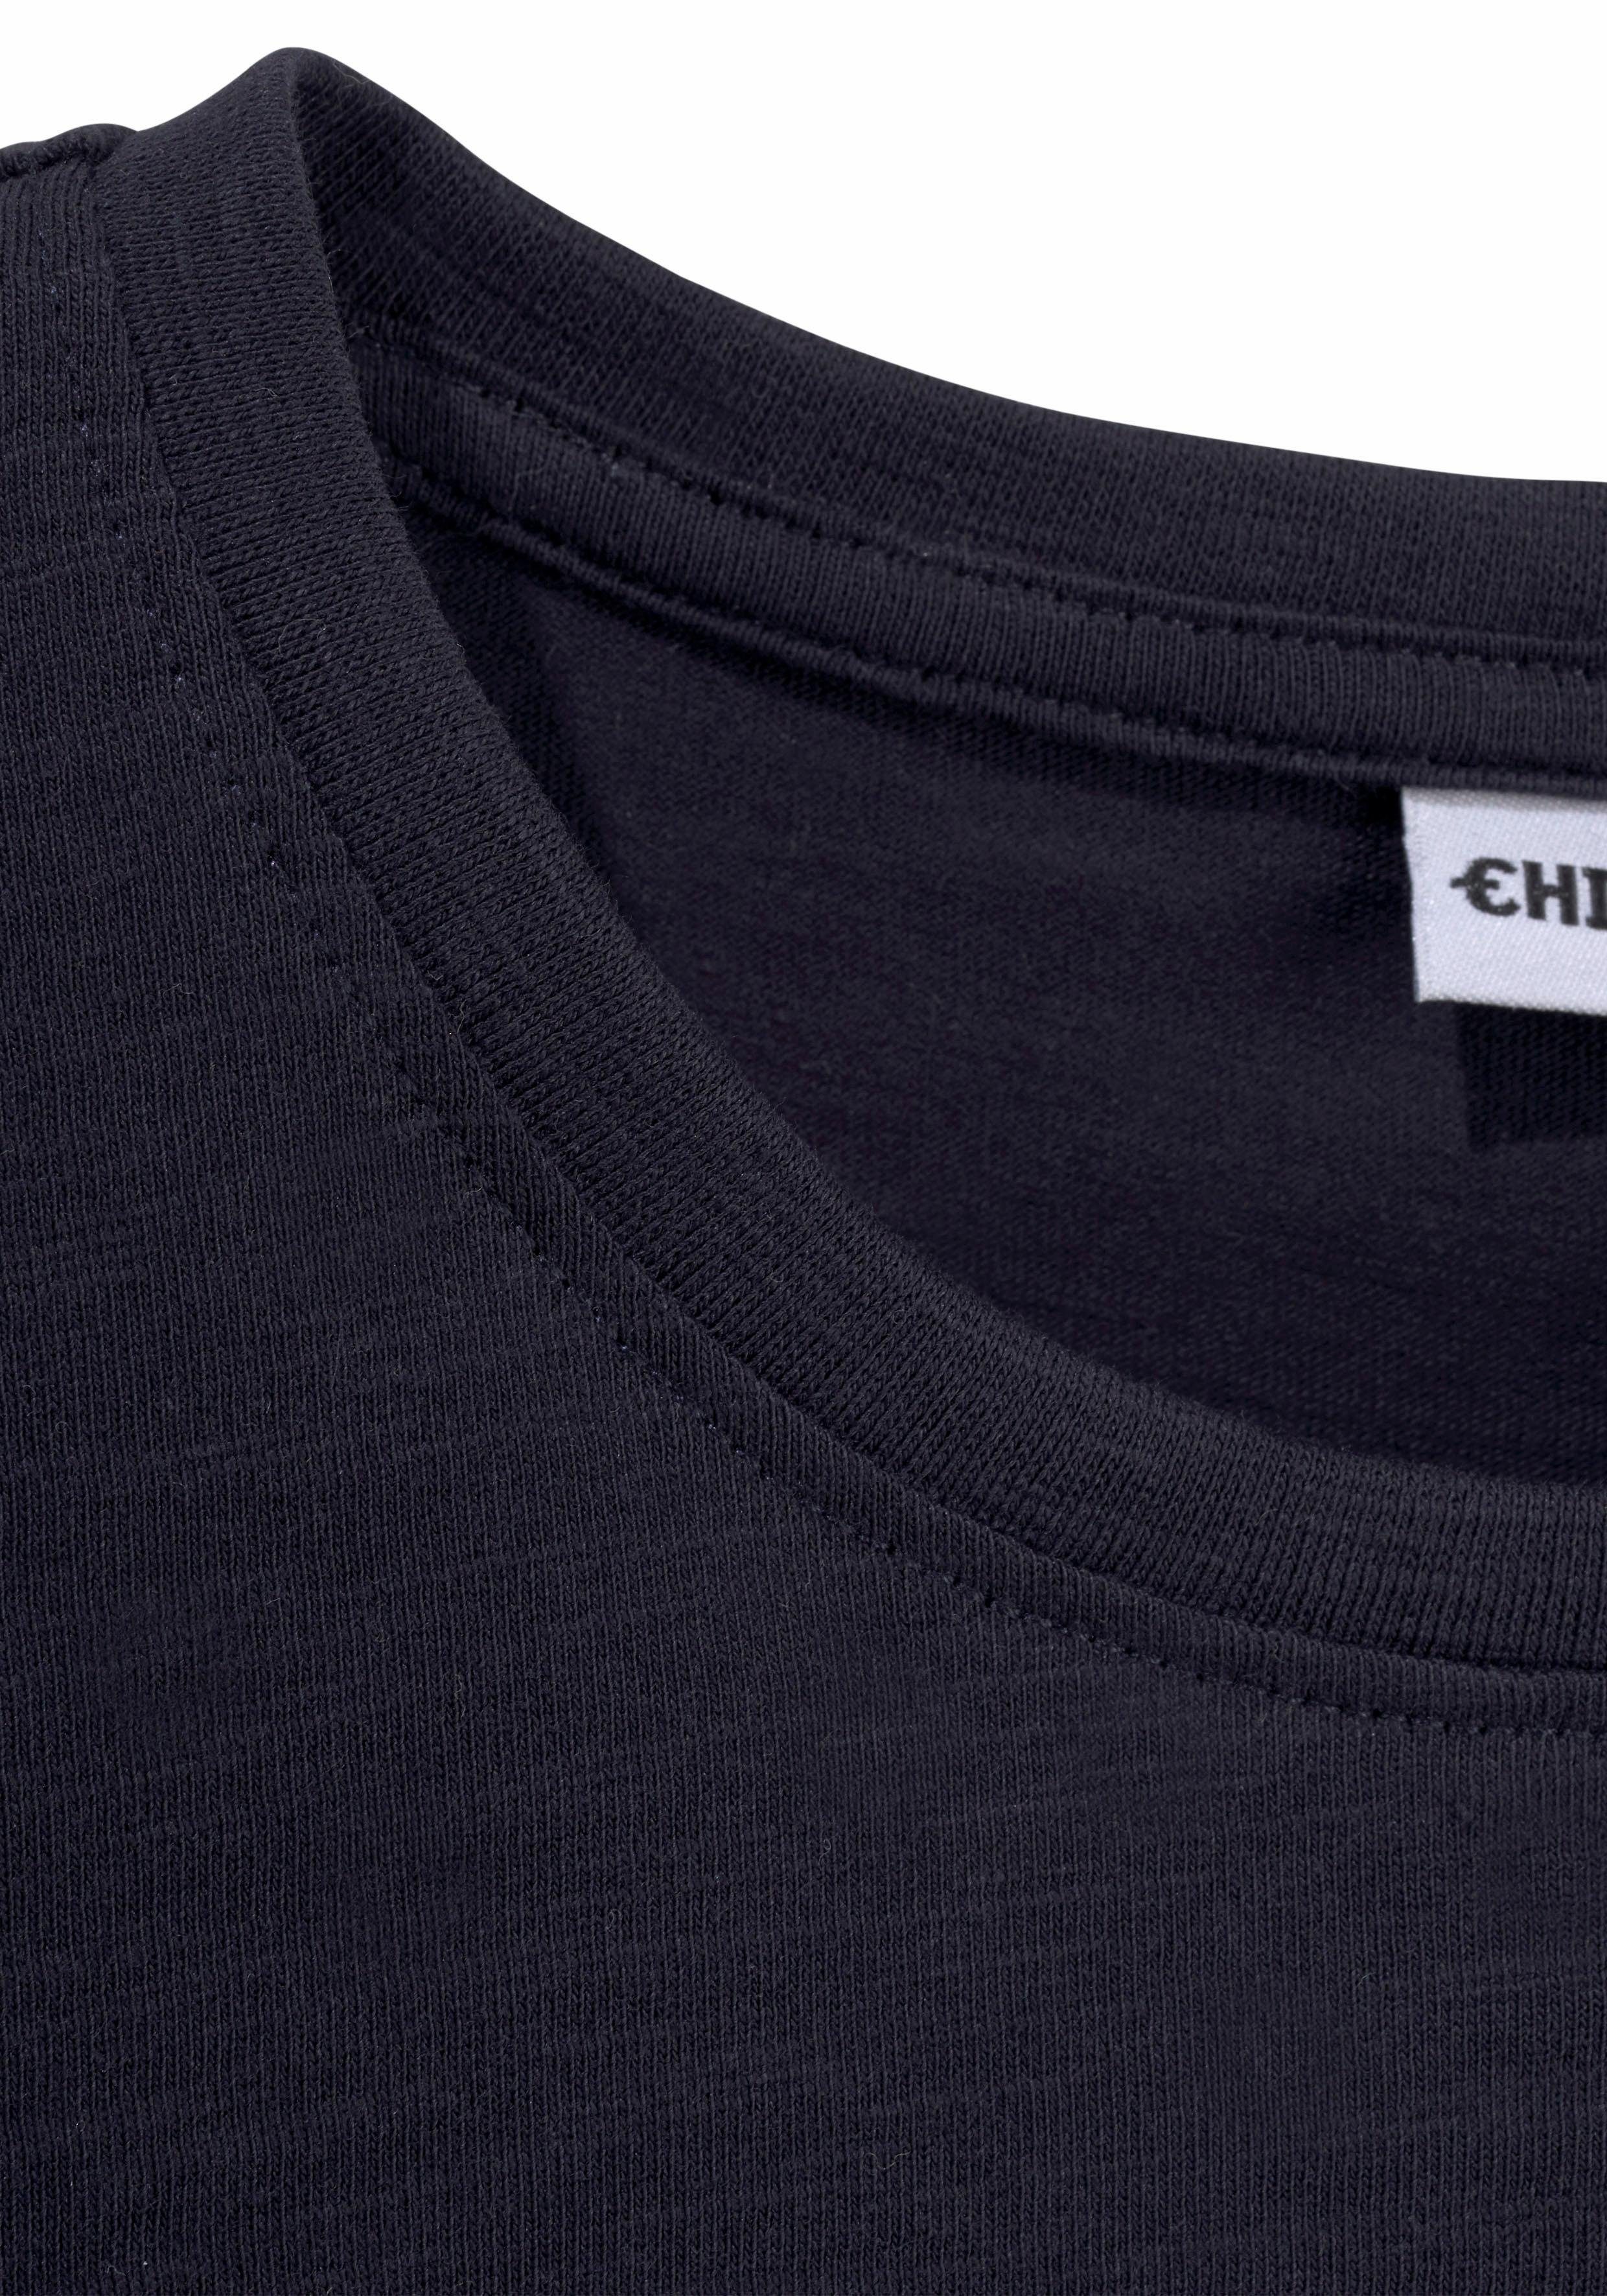 BASIC Logodruck Chiemsee mit vorn T-Shirt